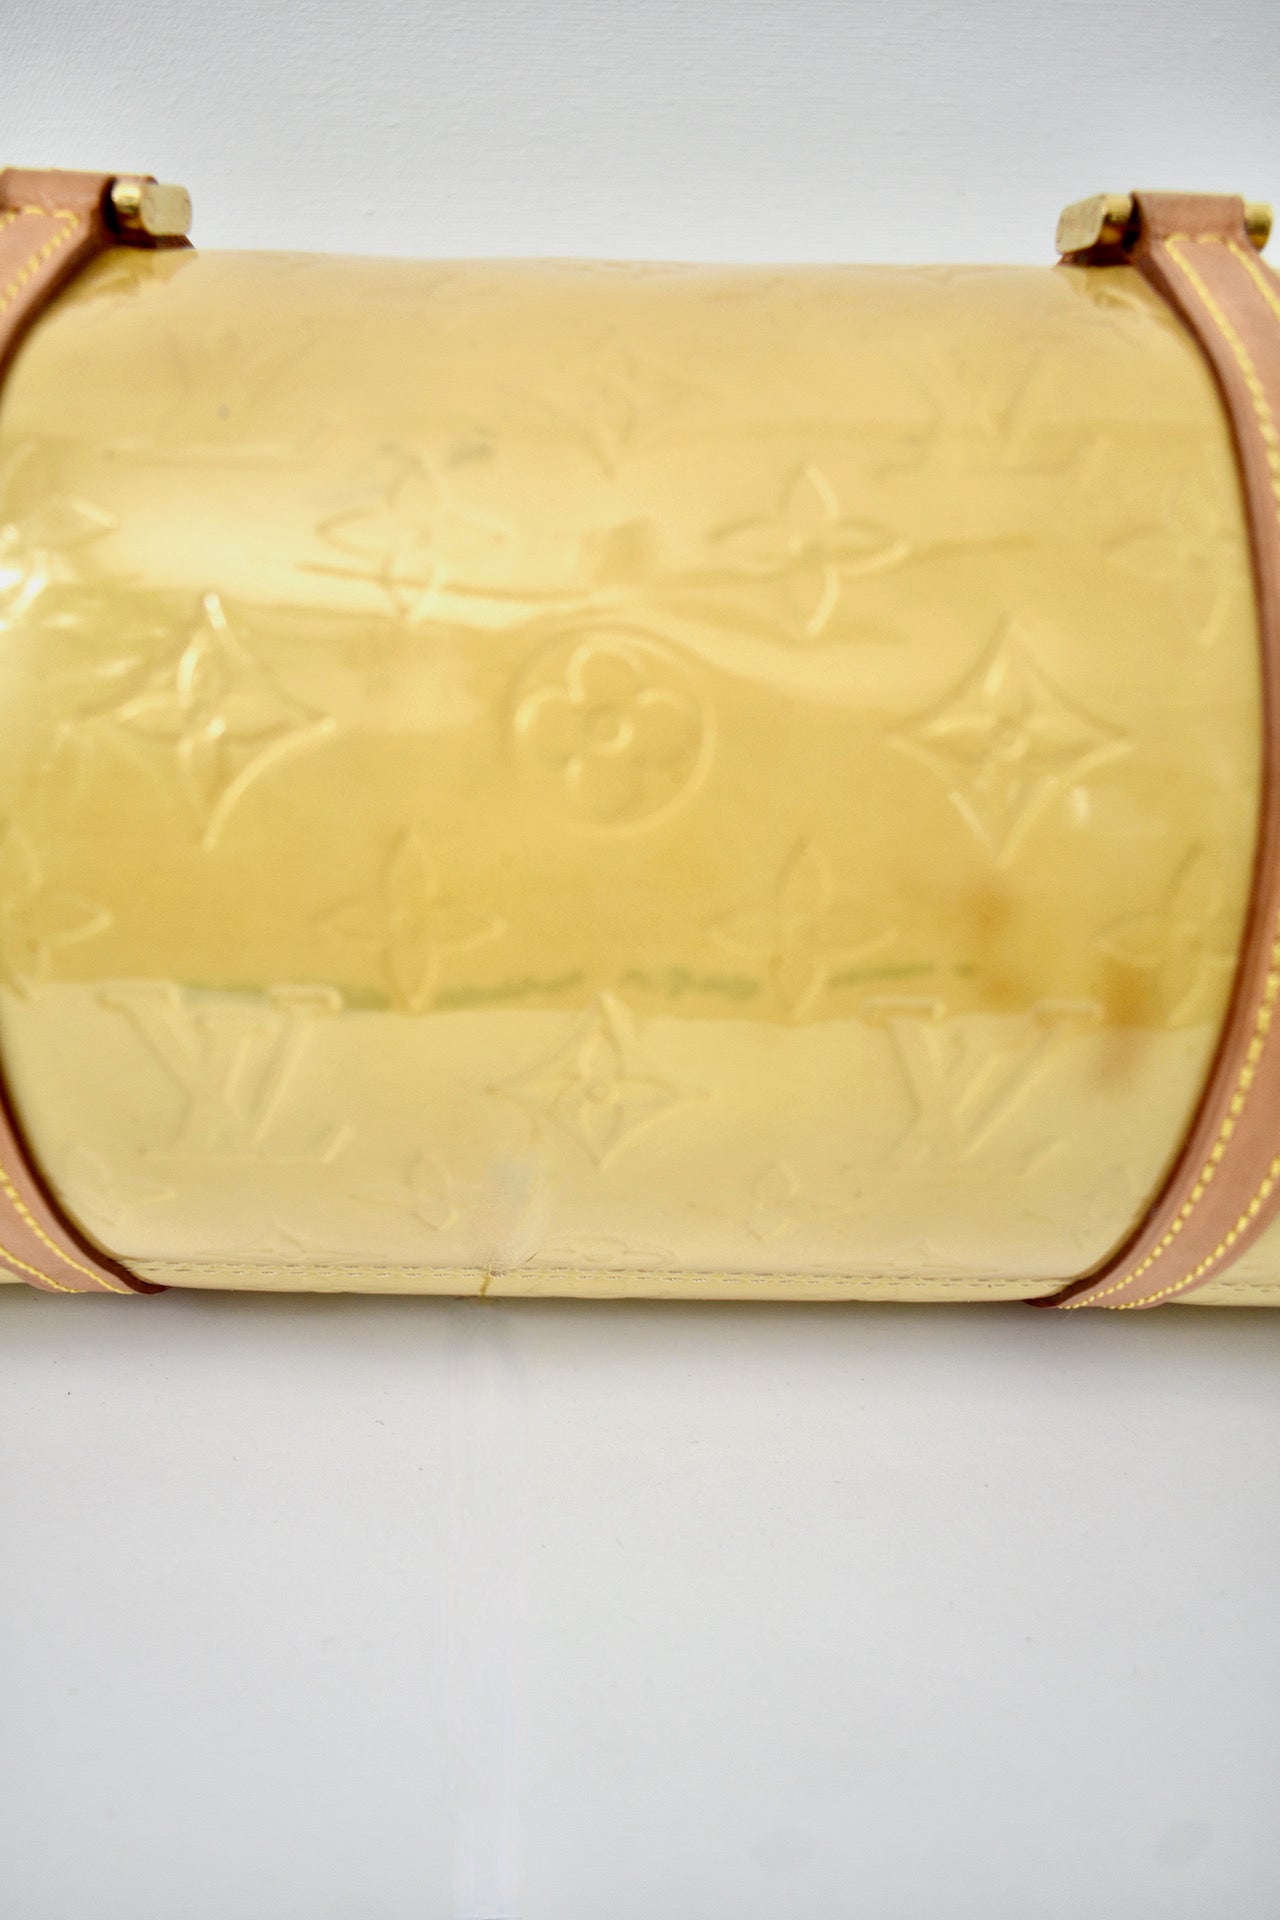 Louis Vuitton Yellow Monogram Vernis Bedford Papillon Bag 4LVS1215